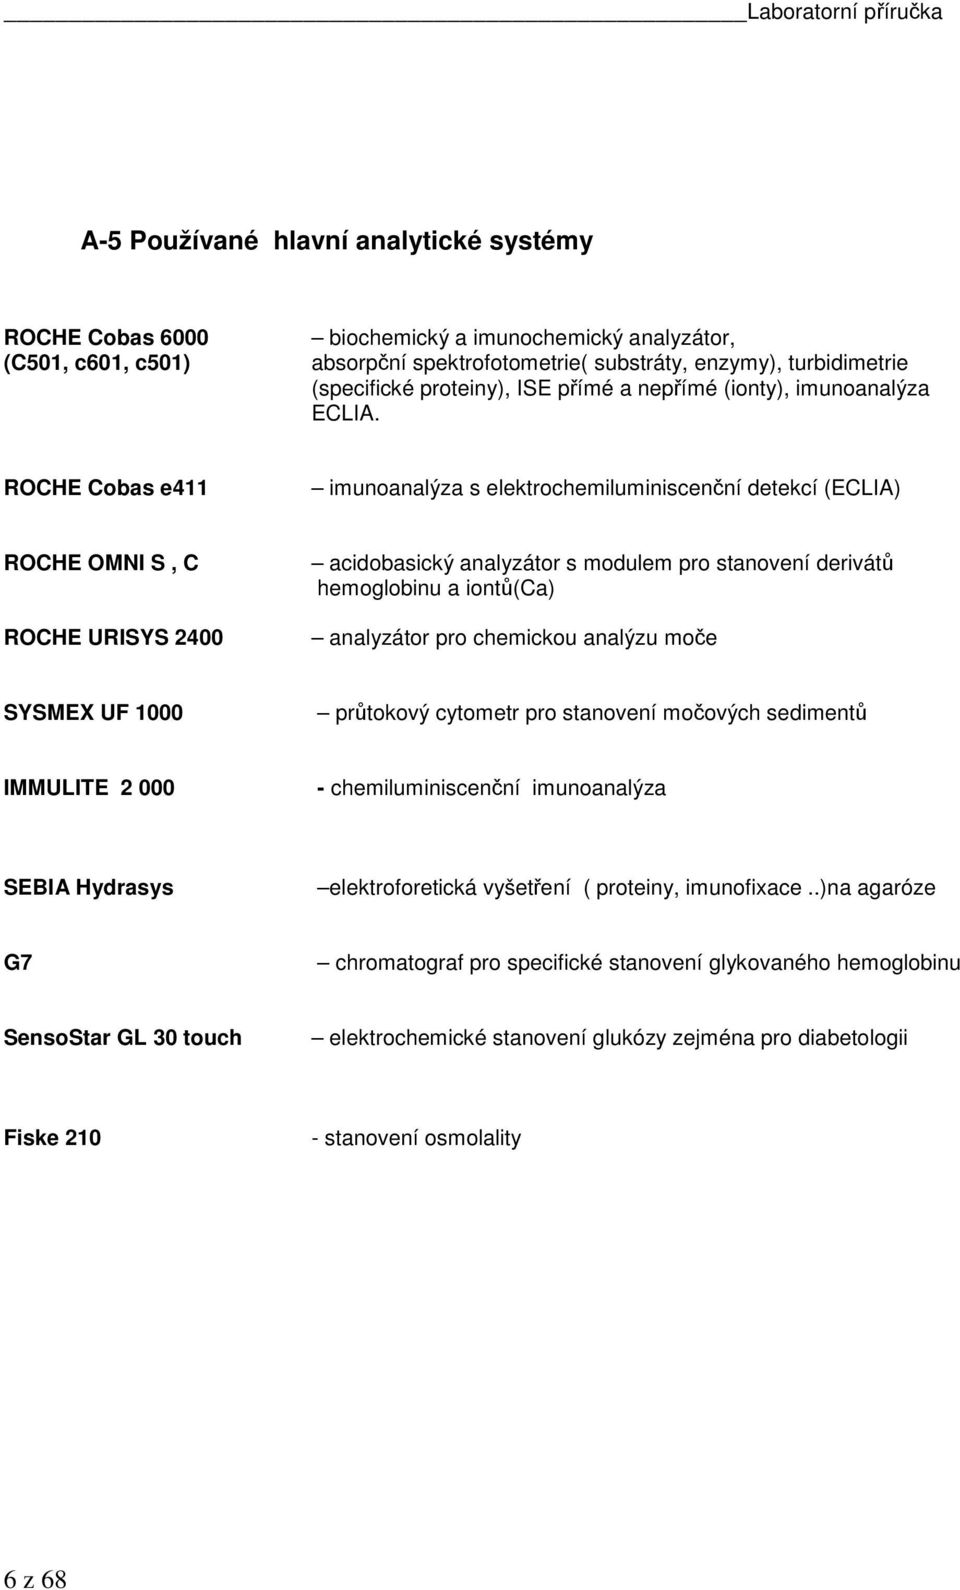 ROCHE Cobas e411 imunoanalýza s elektrochemiluminiscenční detekcí (ECLIA) ROCHE OMNI S, C ROCHE URISYS 2400 acidobasický analyzátor s modulem pro stanovení derivátů hemoglobinu a iontů(ca) analyzátor